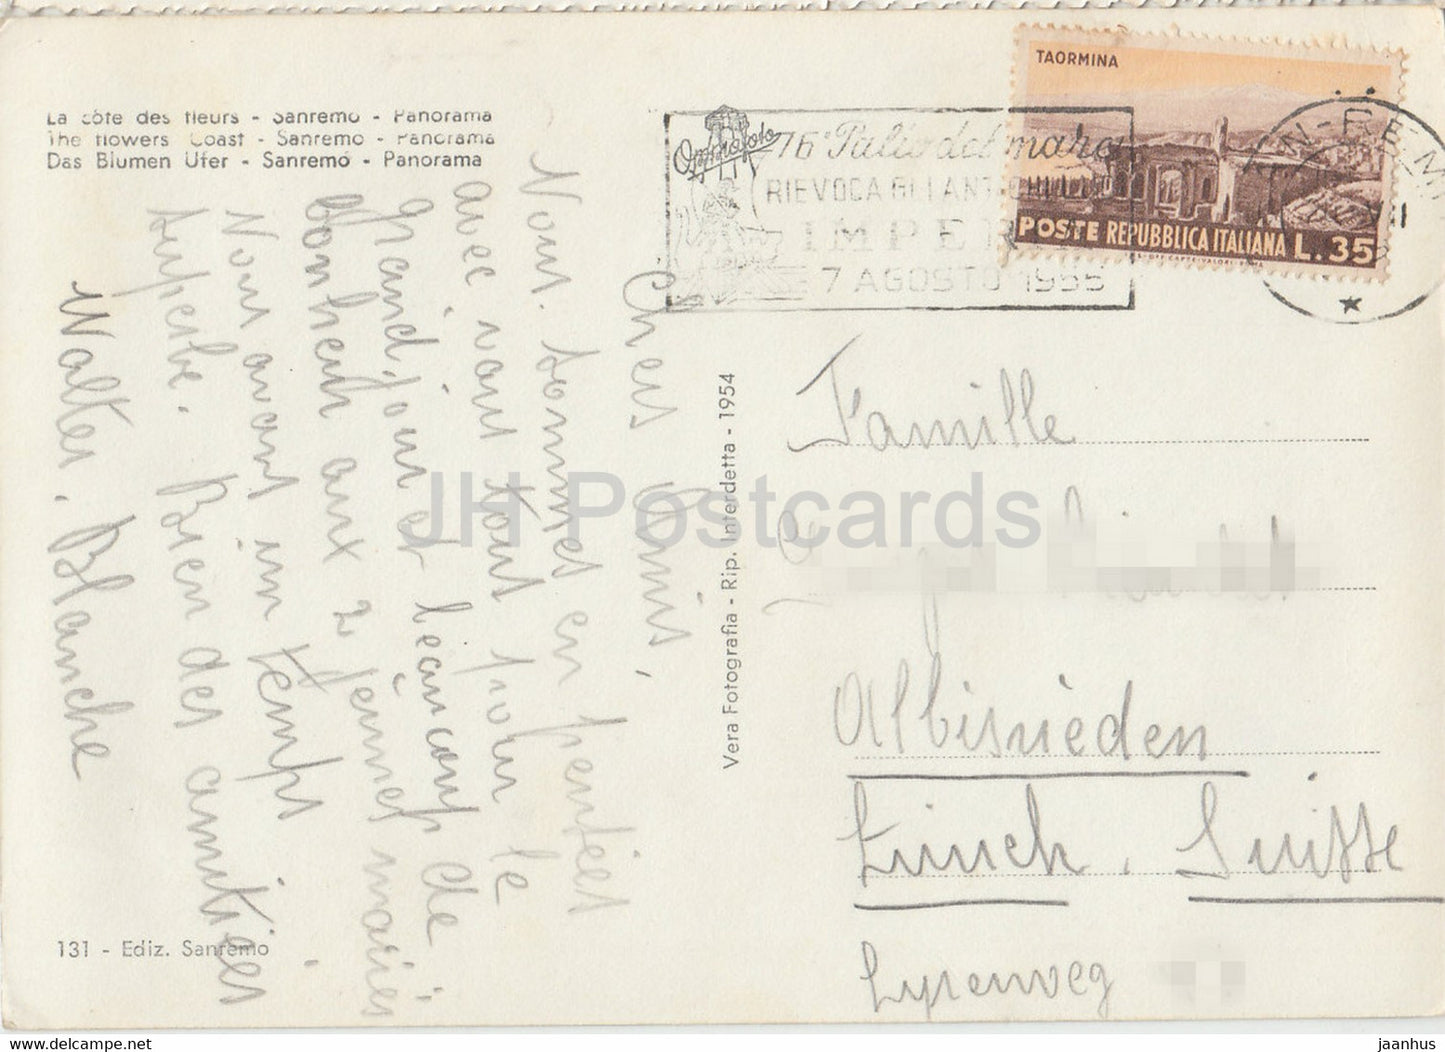 Riviera dei Fiori - Sanremo - Panorama - Zug - Eisenbahn - Die Blumenküste - alte Postkarte - 1955 - Italien - gebraucht